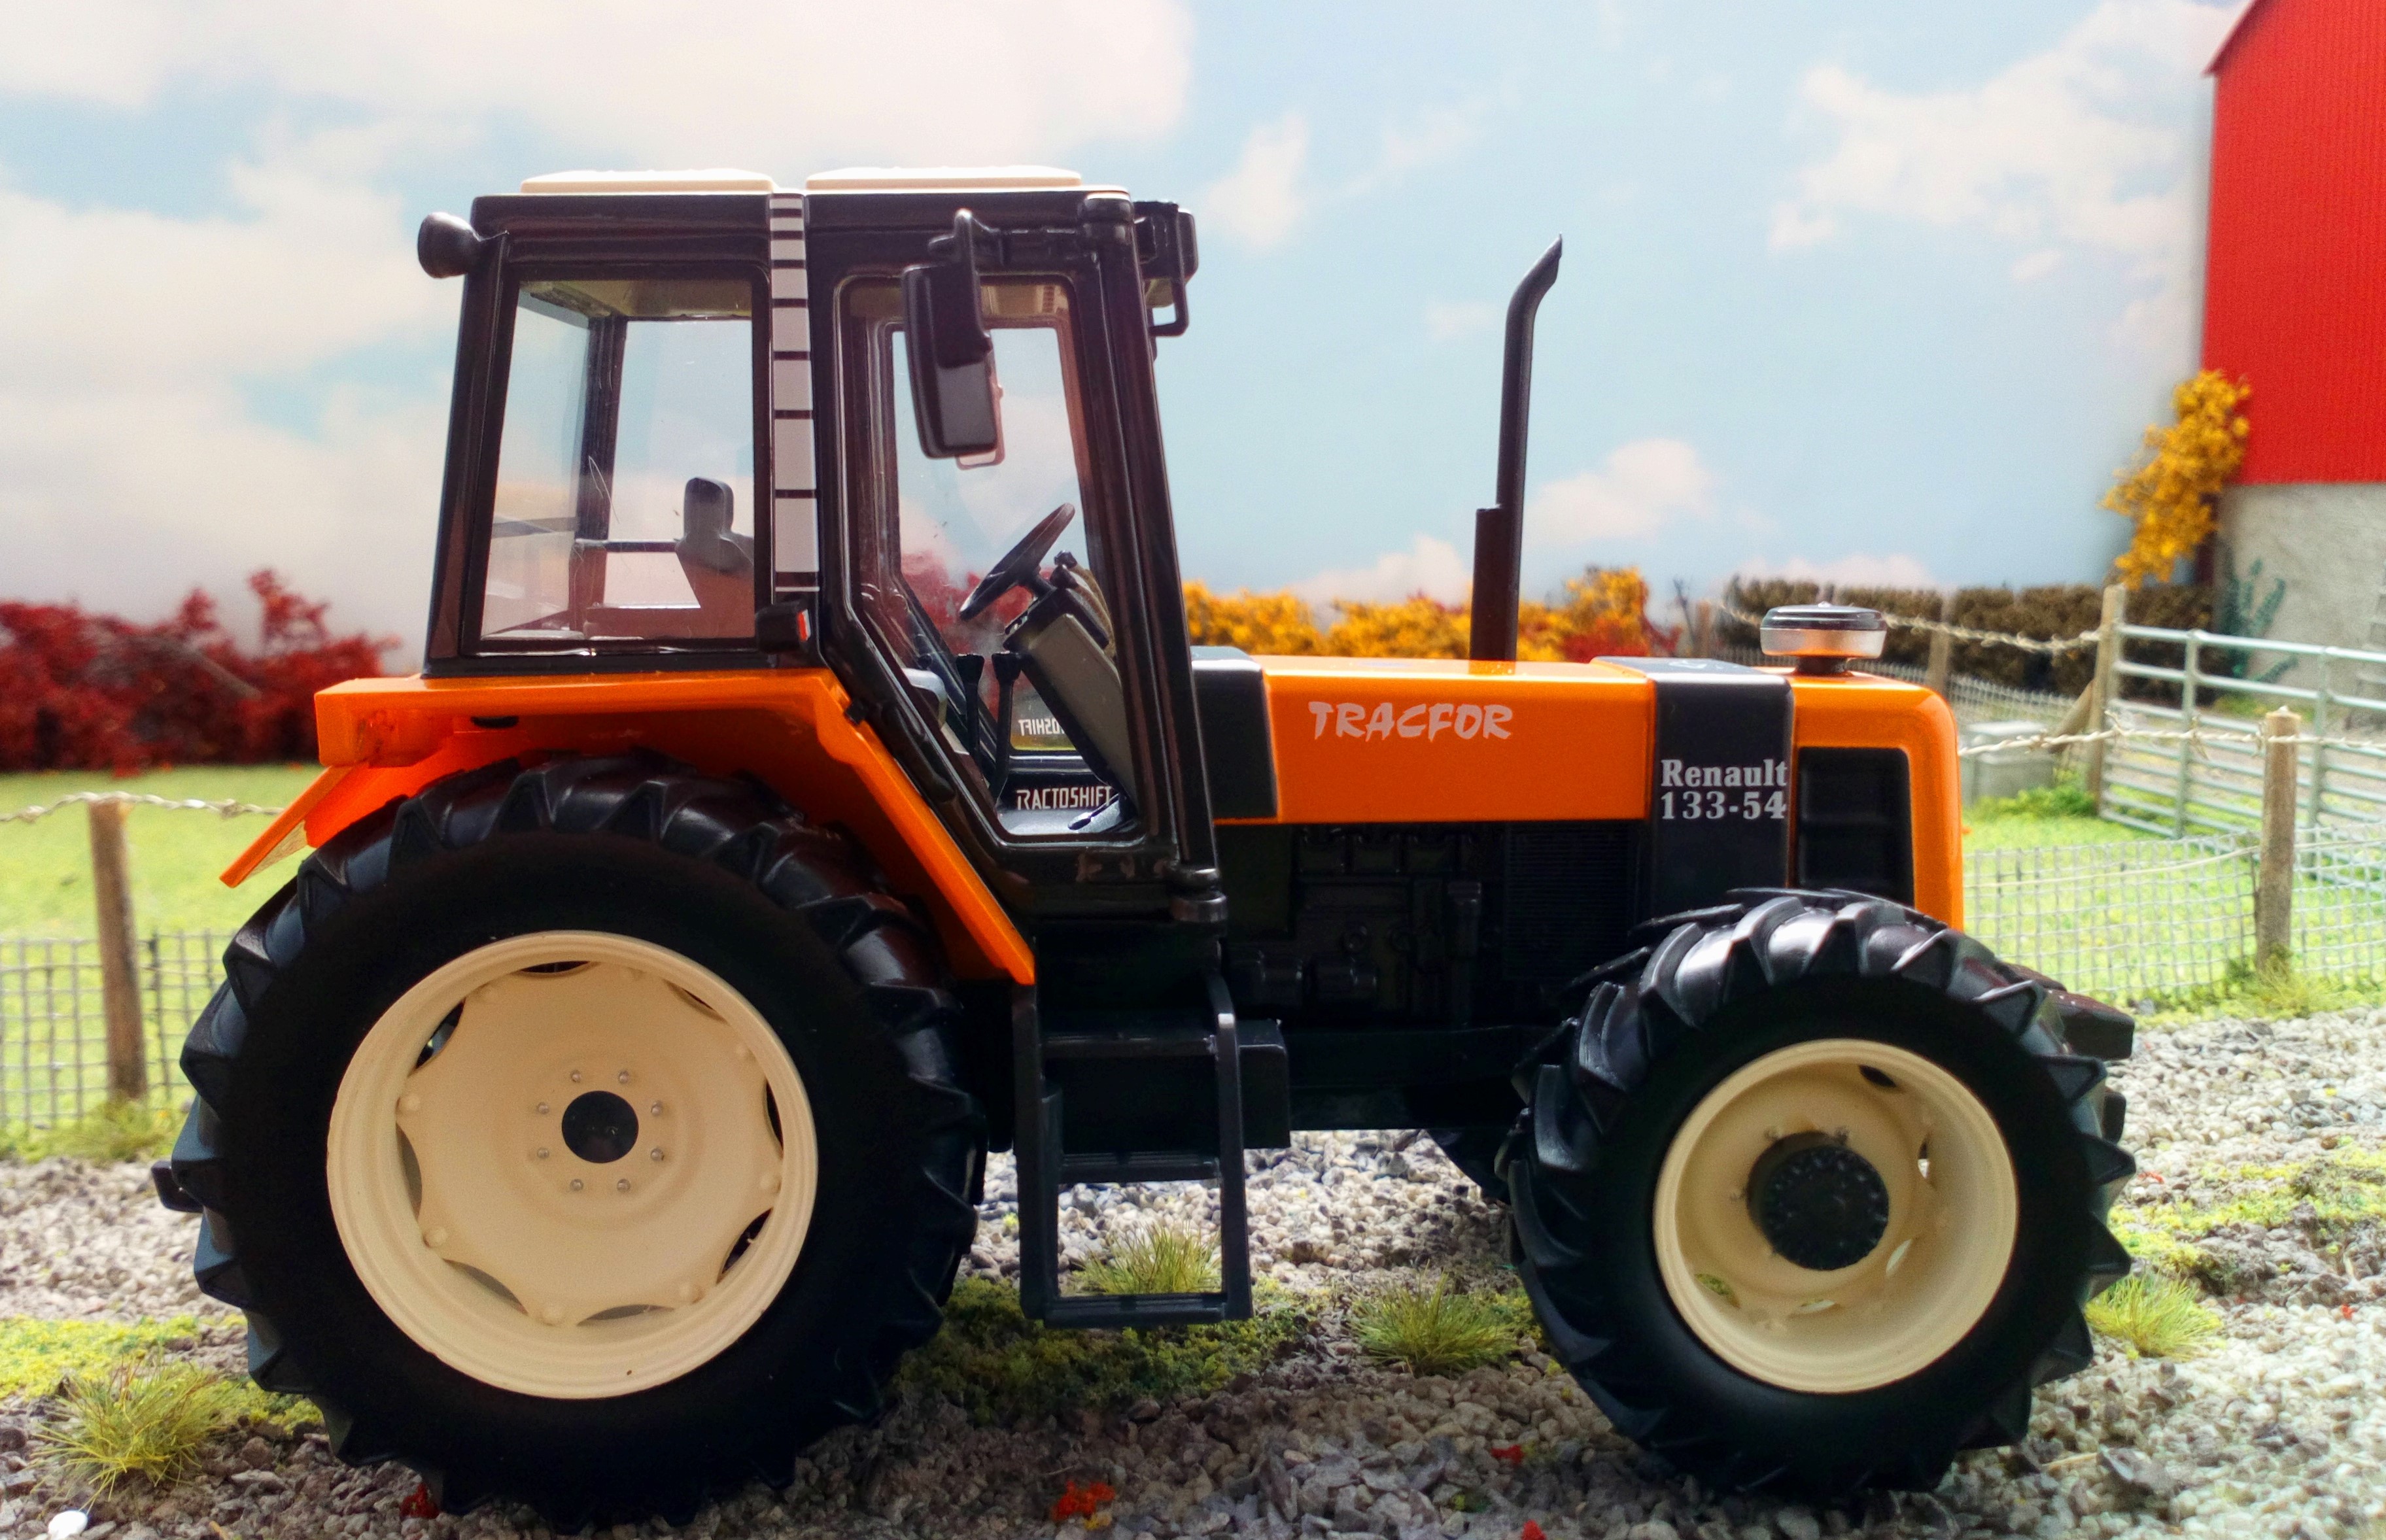 REP209 Tracteur RENAULT TRACFOR 133-54 Série 1500 unités